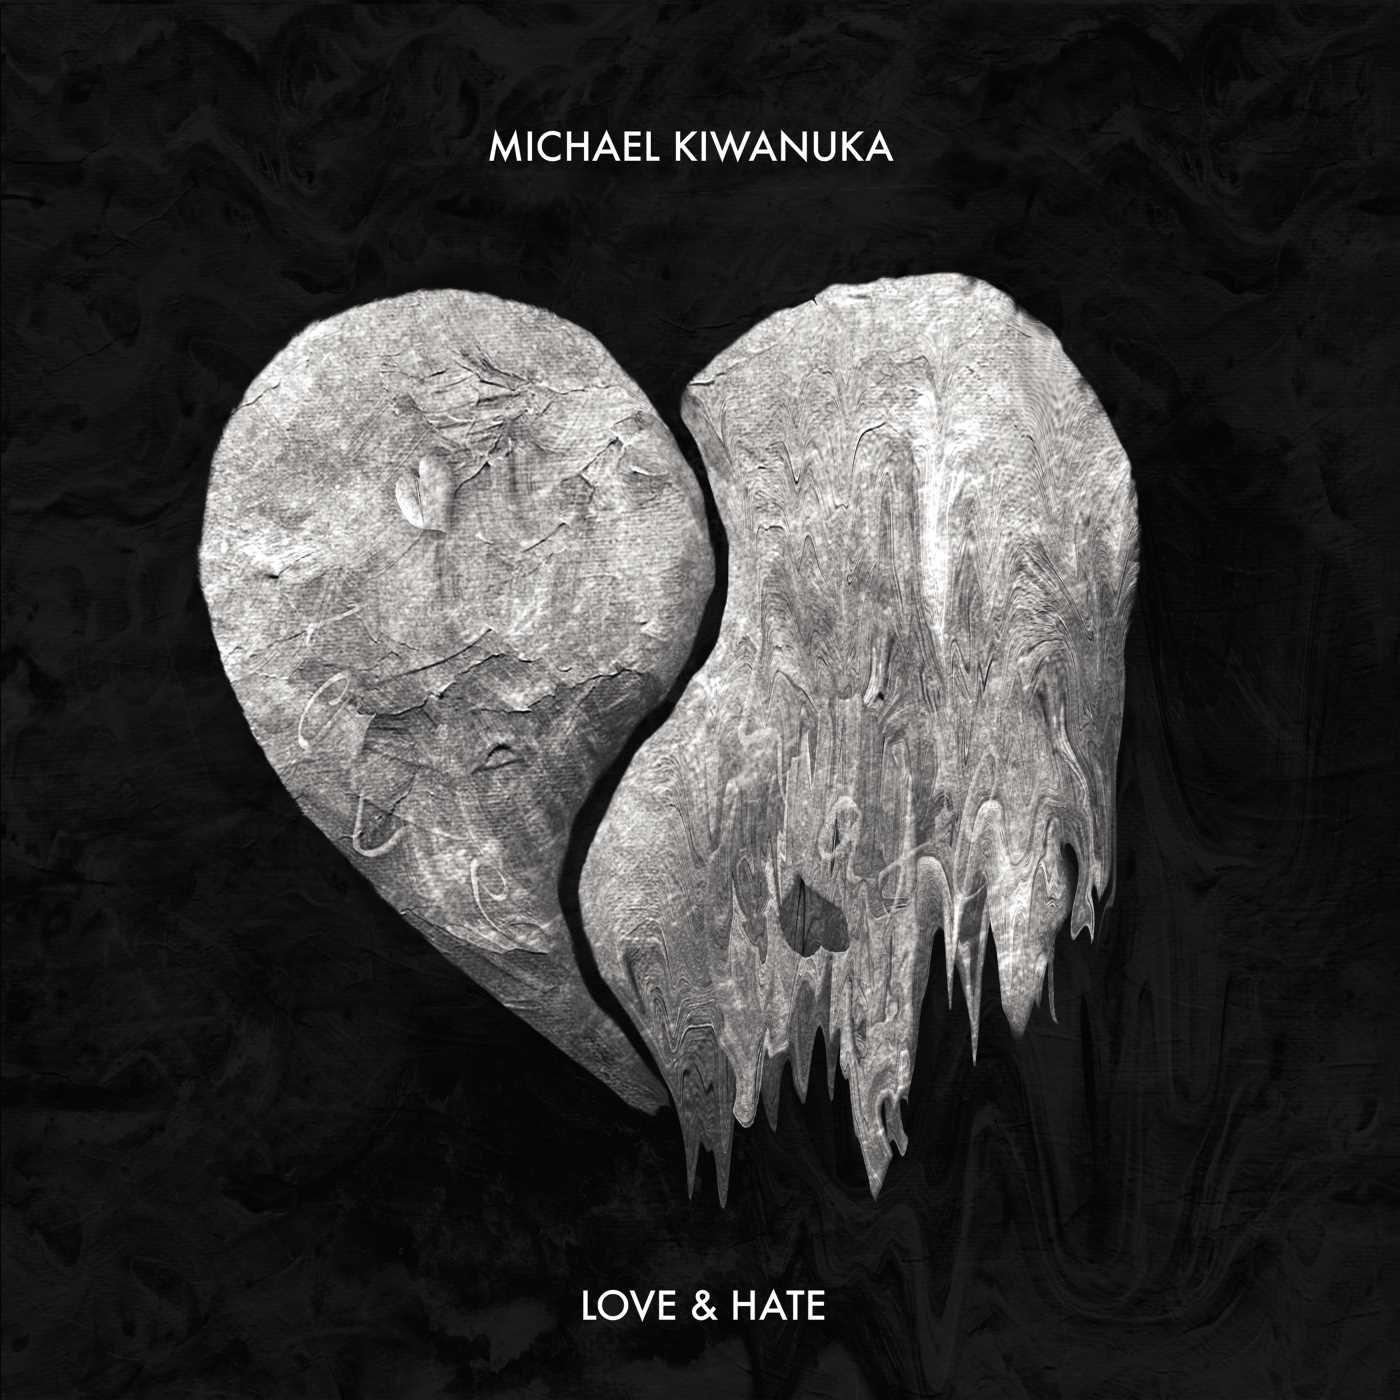 Michael Kiwanuka "Love & Hate" LP